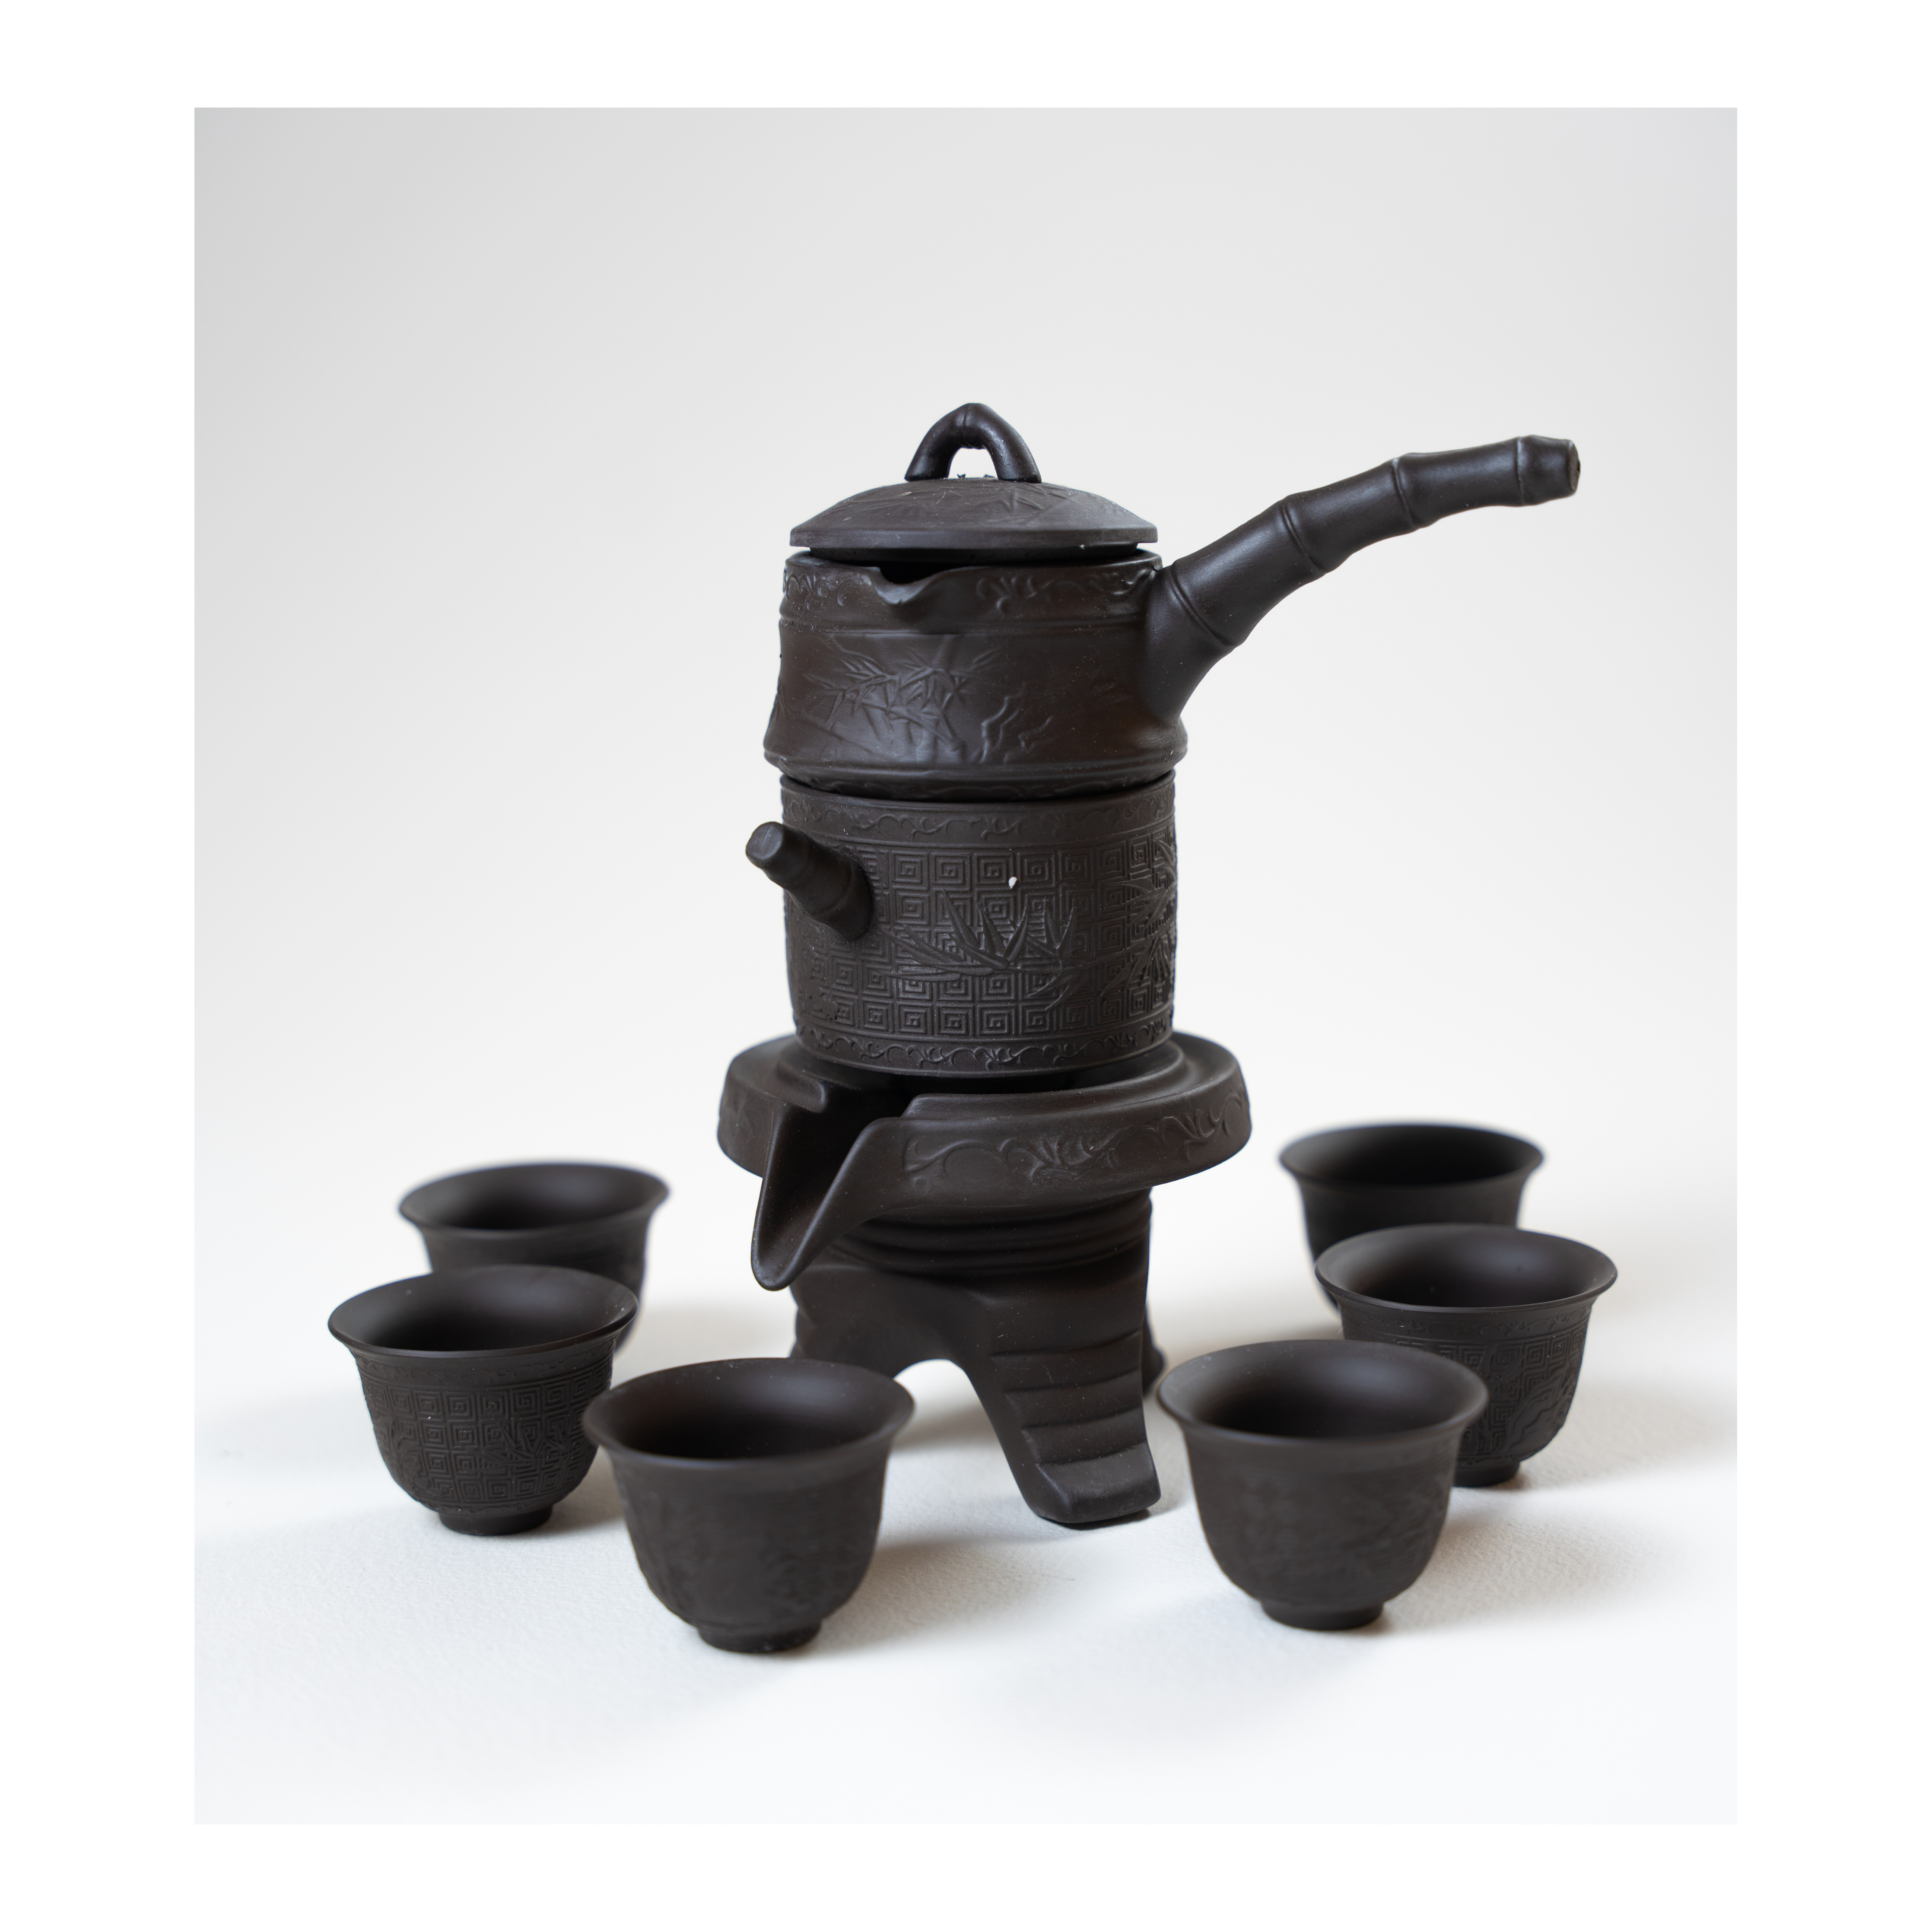 Juego de ceremonia del té, arcilla morada, tetera con goteo automático